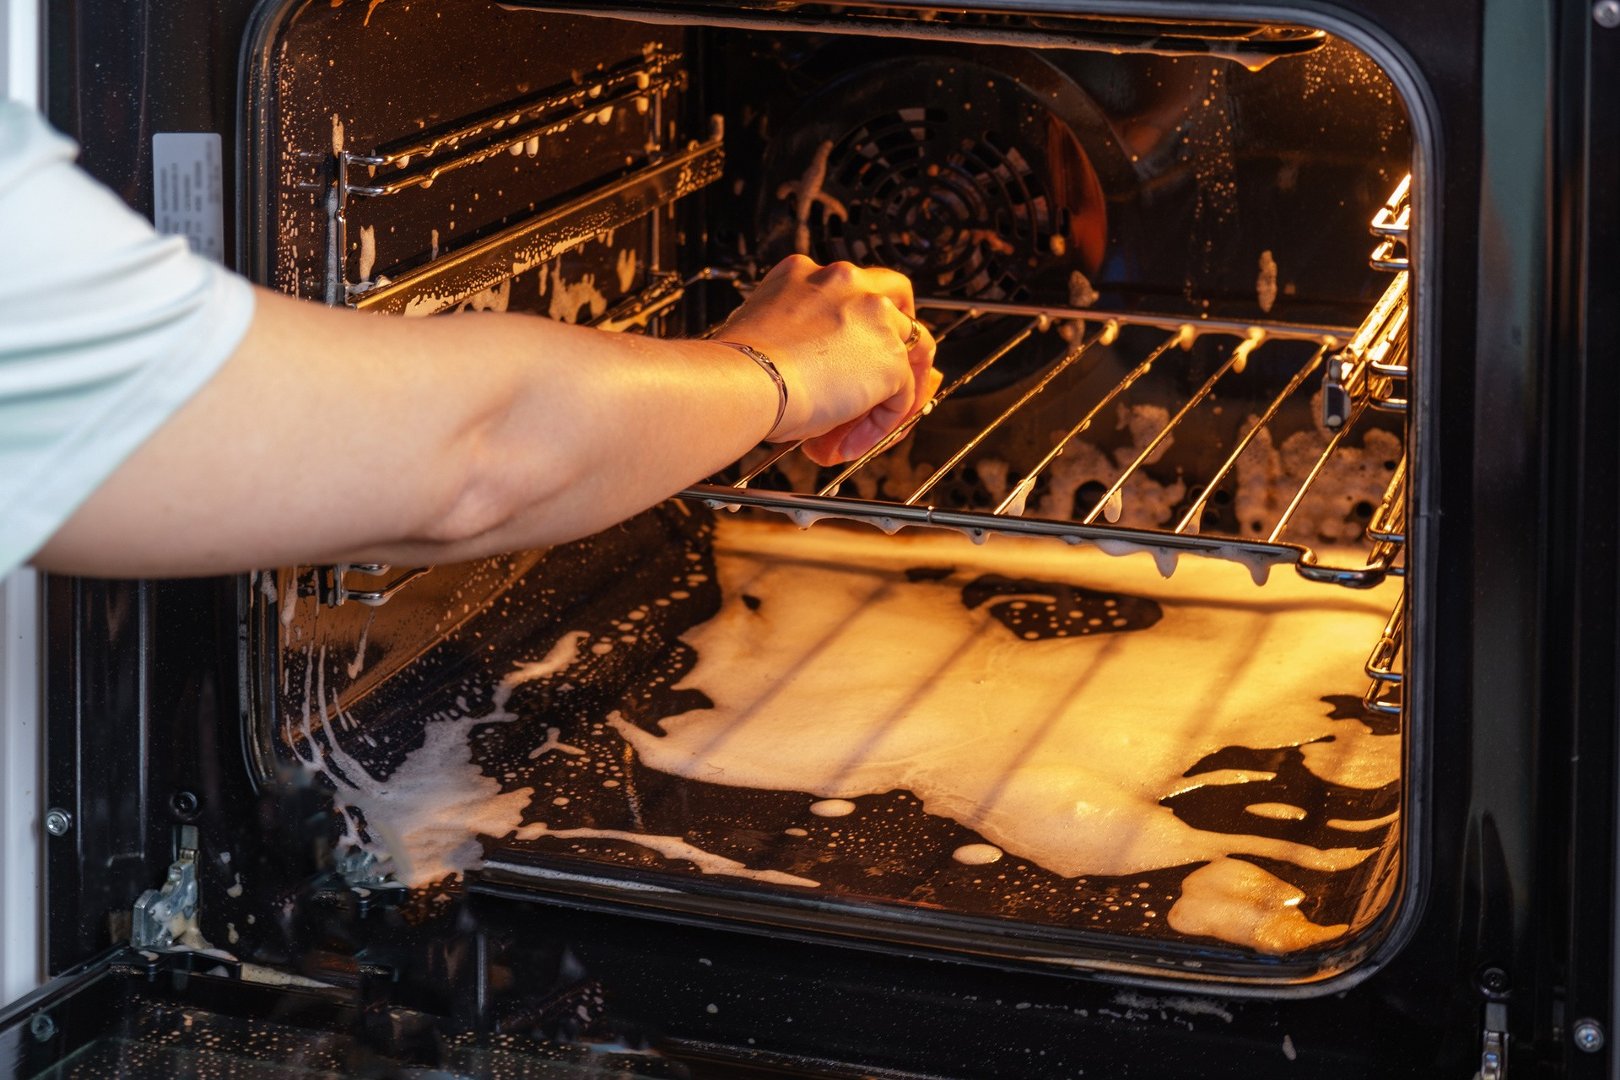 Jak szybko wyczyścić piekarnik? Poznaj najlepsze babcine sposoby, które  ułatwią życie! Niezawodne triki na czyszczenie piekarnika bez chemii |  RegioDom